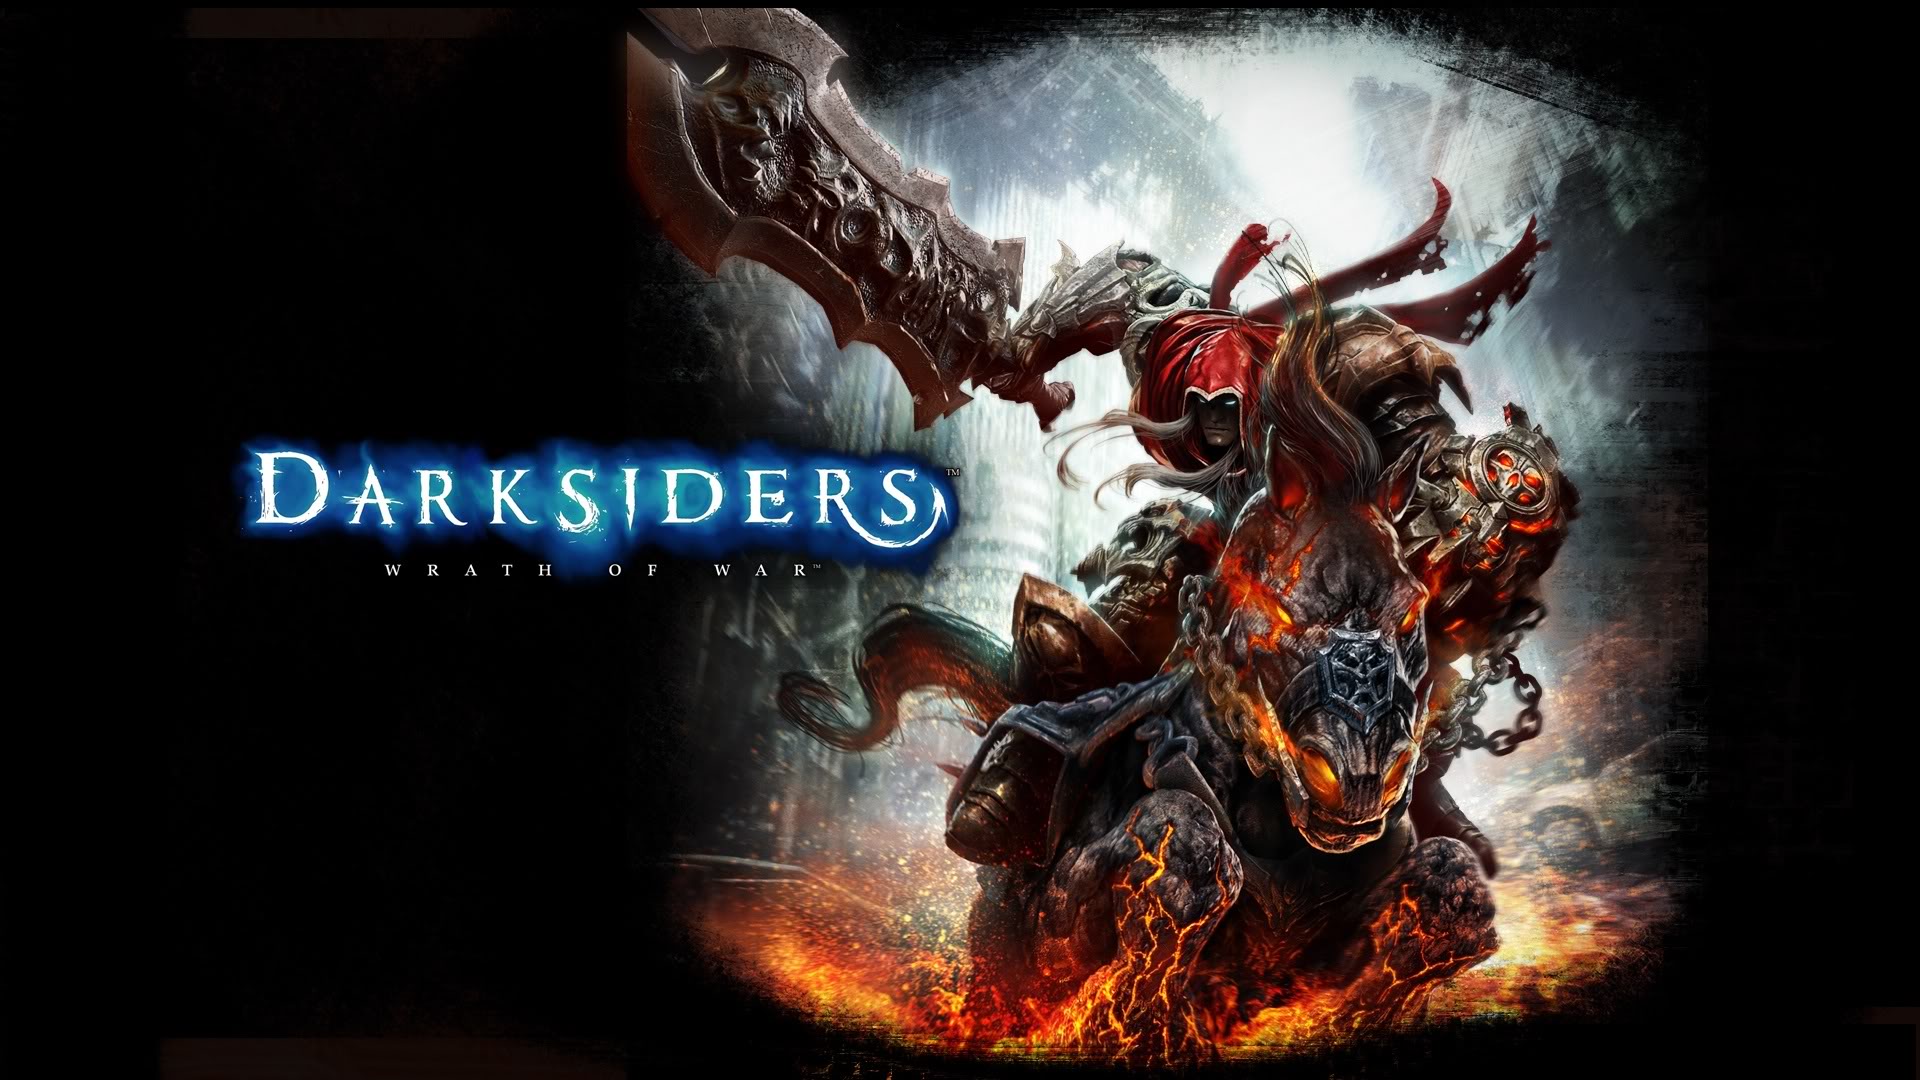 видеоигры, Darksiders - обои на рабочий стол